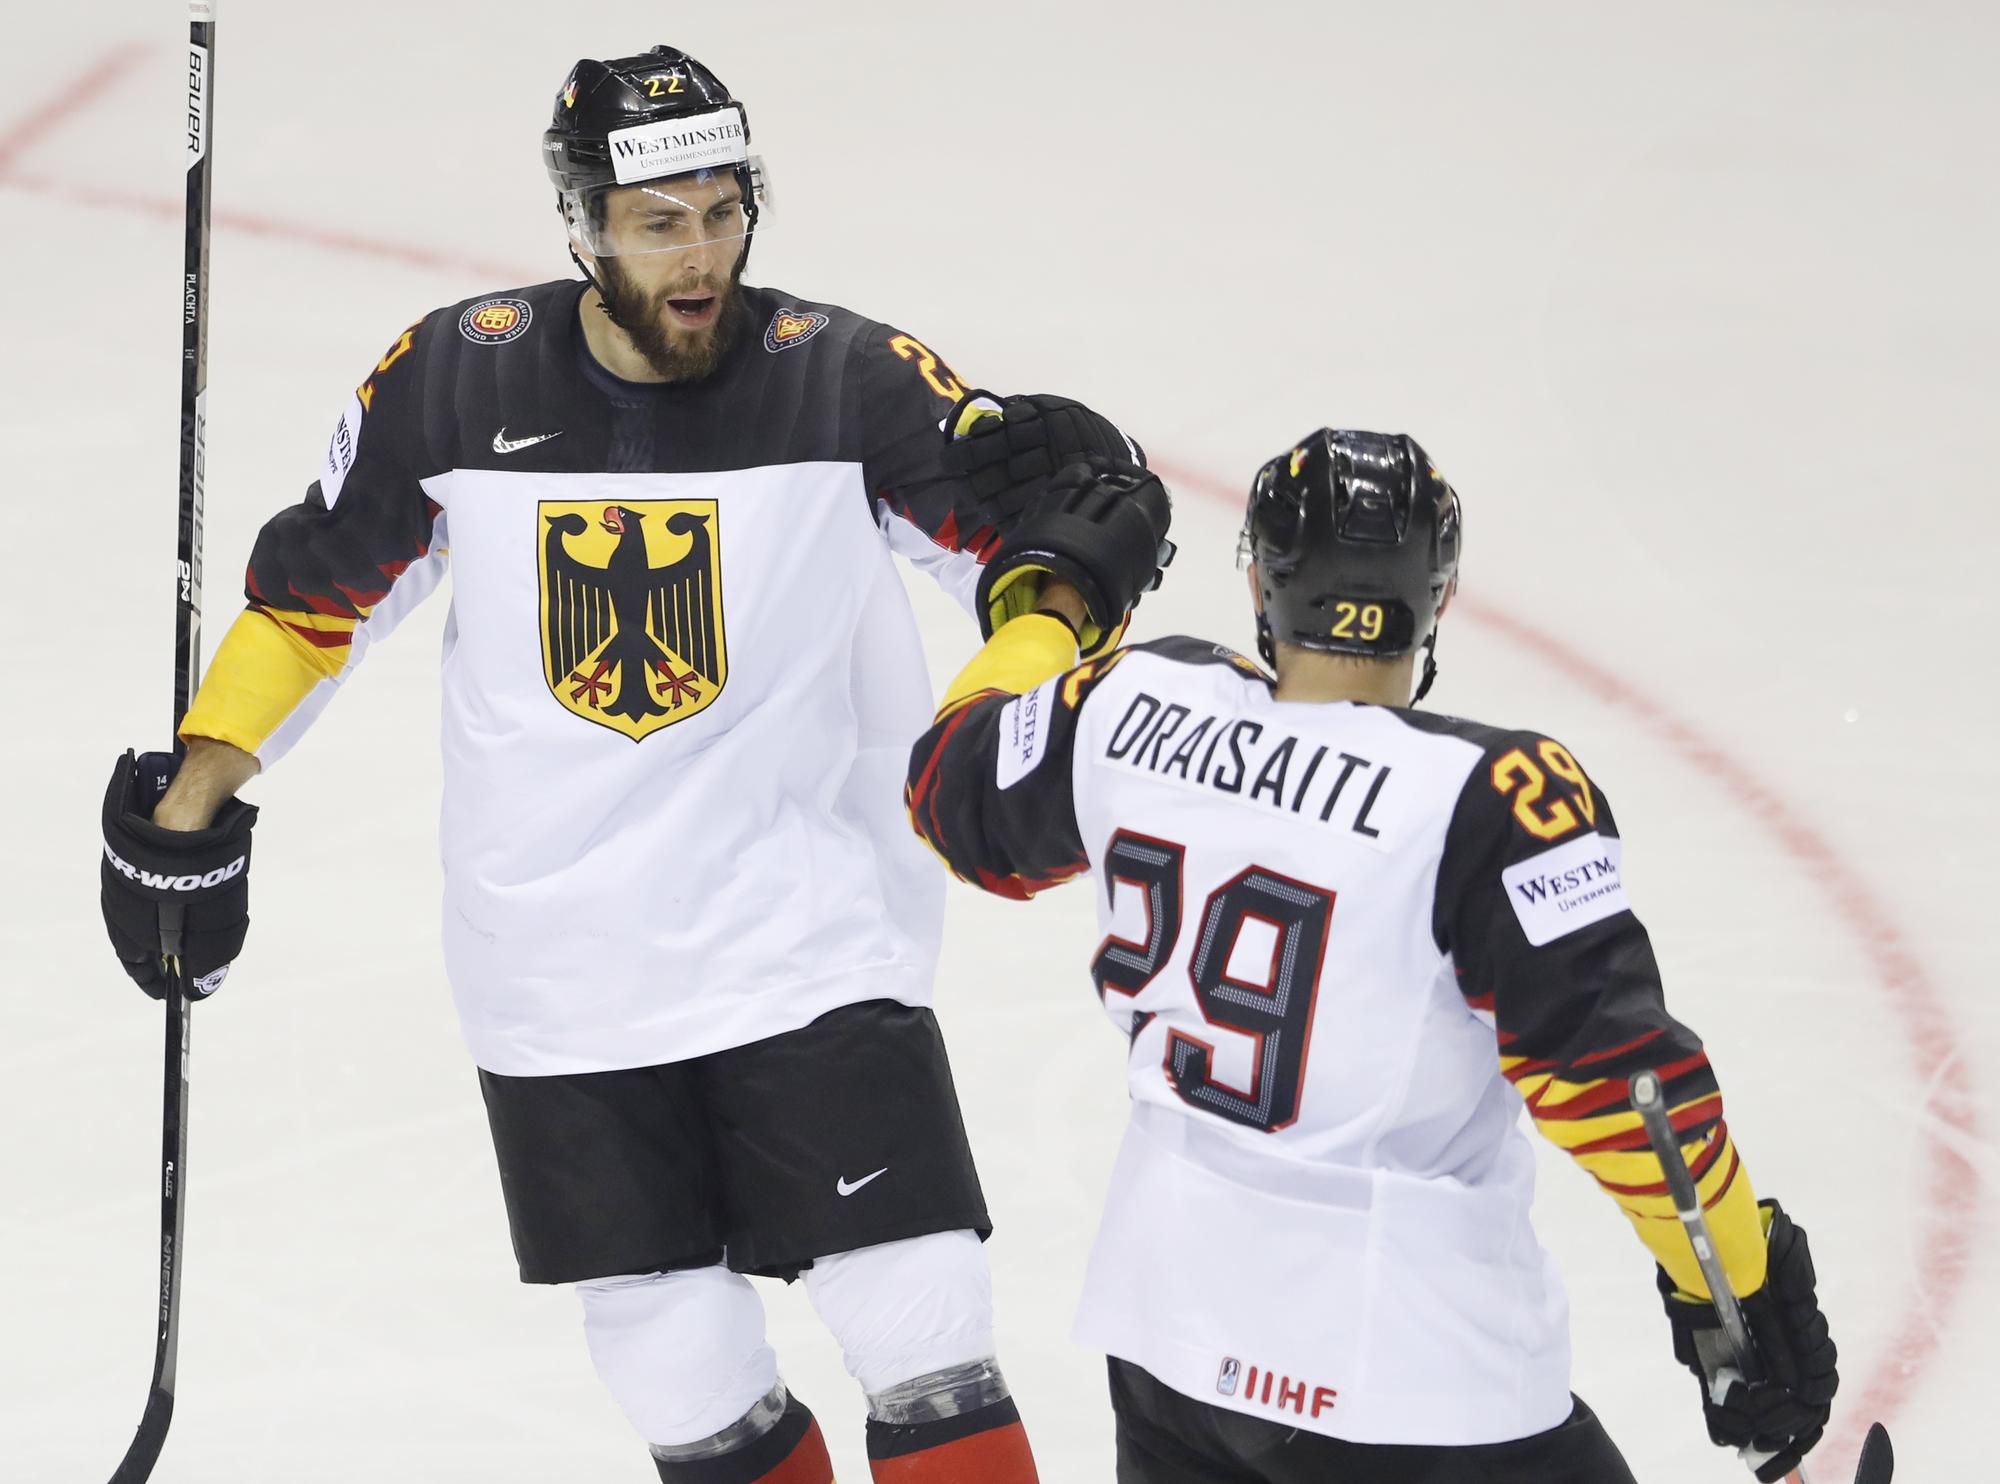 Nemecký hokejista Matthias Plachta sa teší z gólu so spoluhráčom Leonom Draisaitlom.